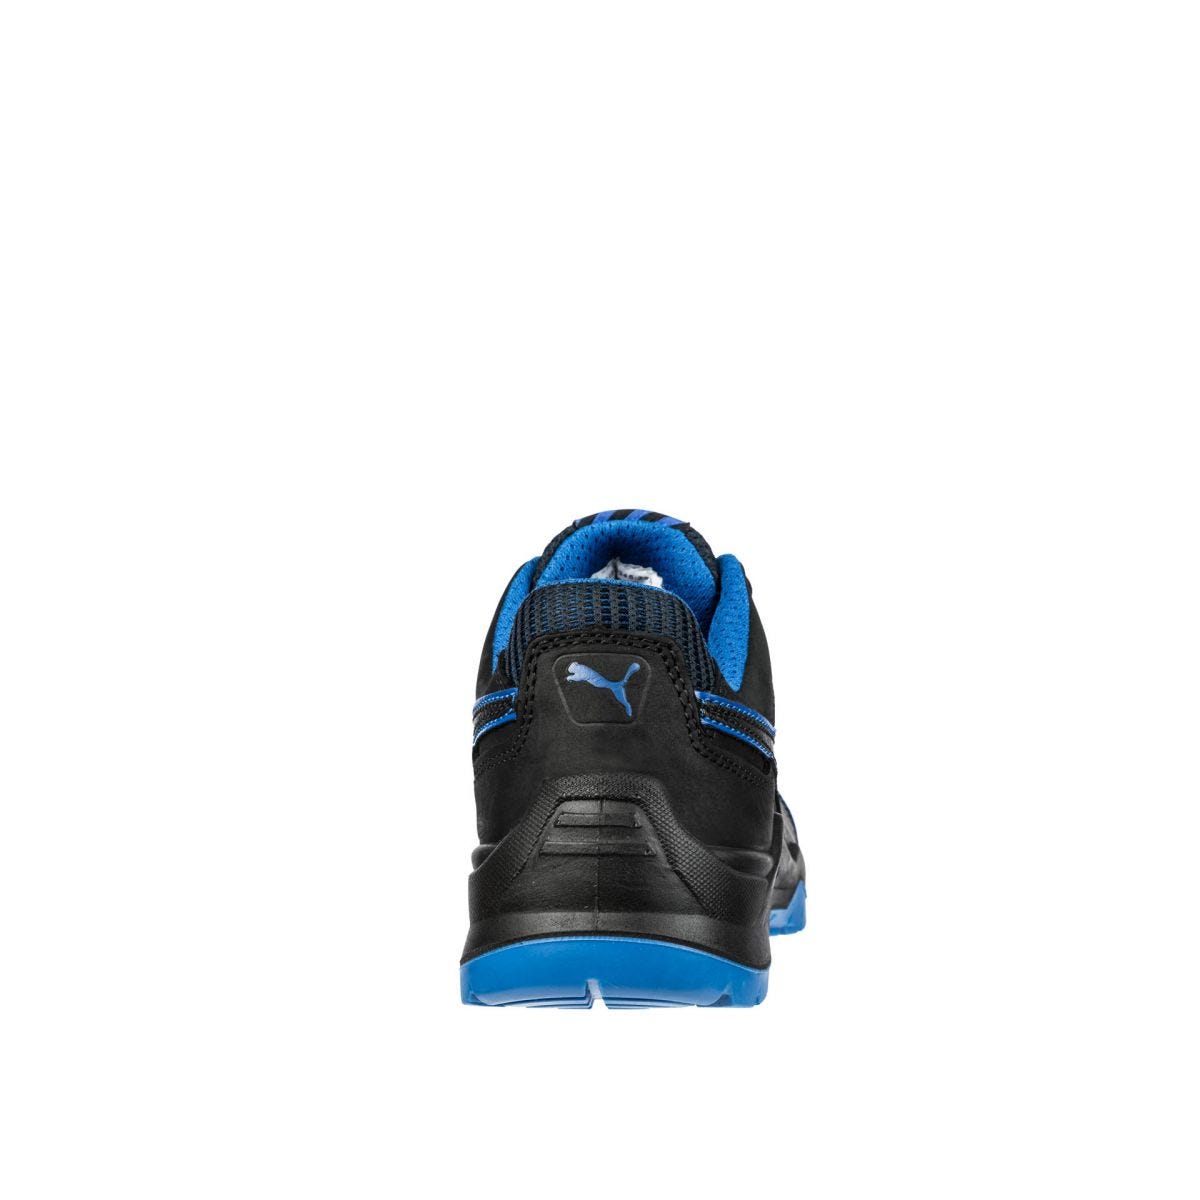 Chaussures de sécurité Argon RX low S3 ESD SRC bleu - Puma - Taille 40 1